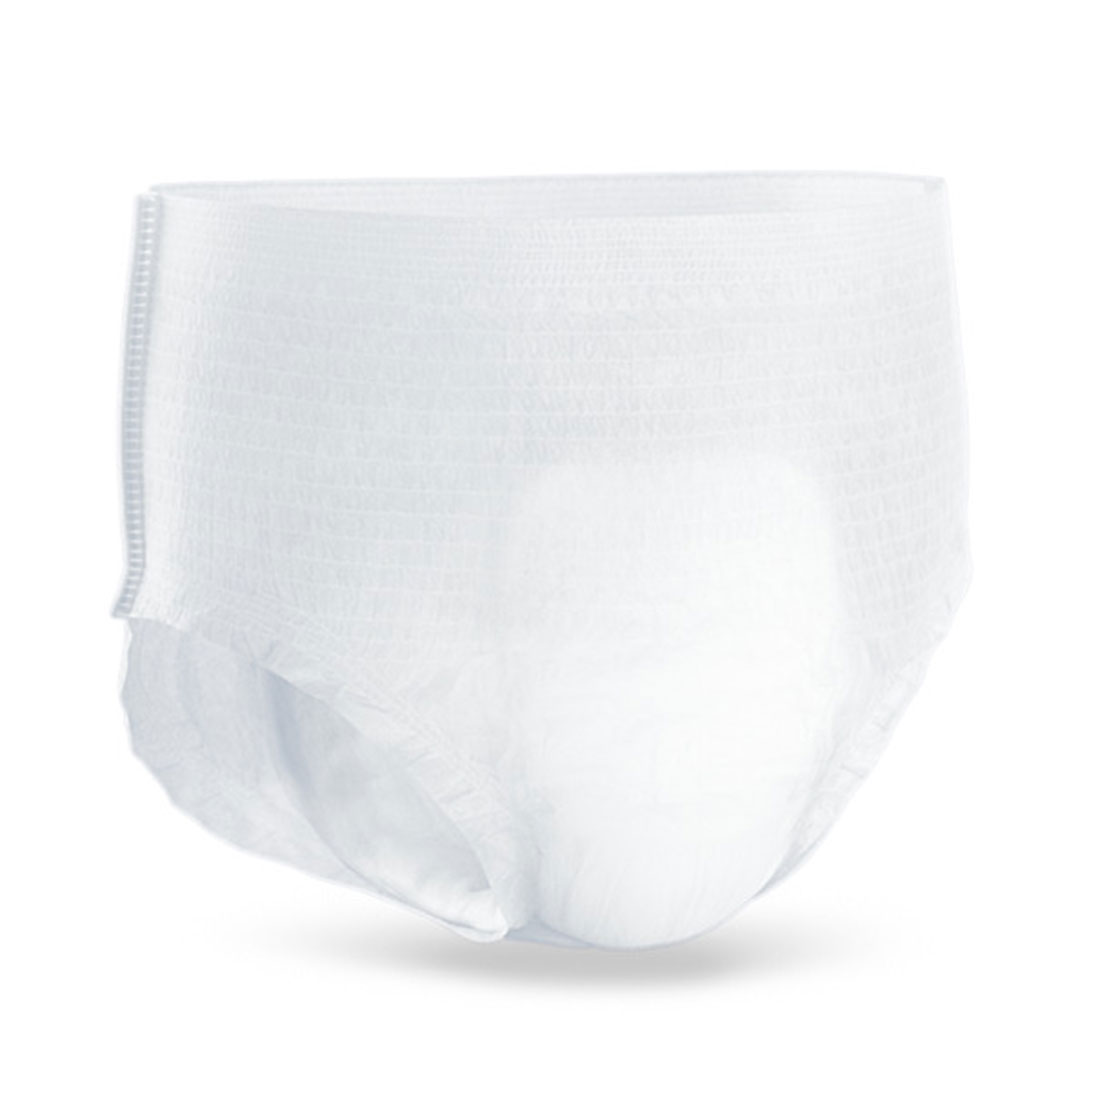 TENA Pants Normal, Windelhose, Small, Beutel (1 x 15 Stk.)